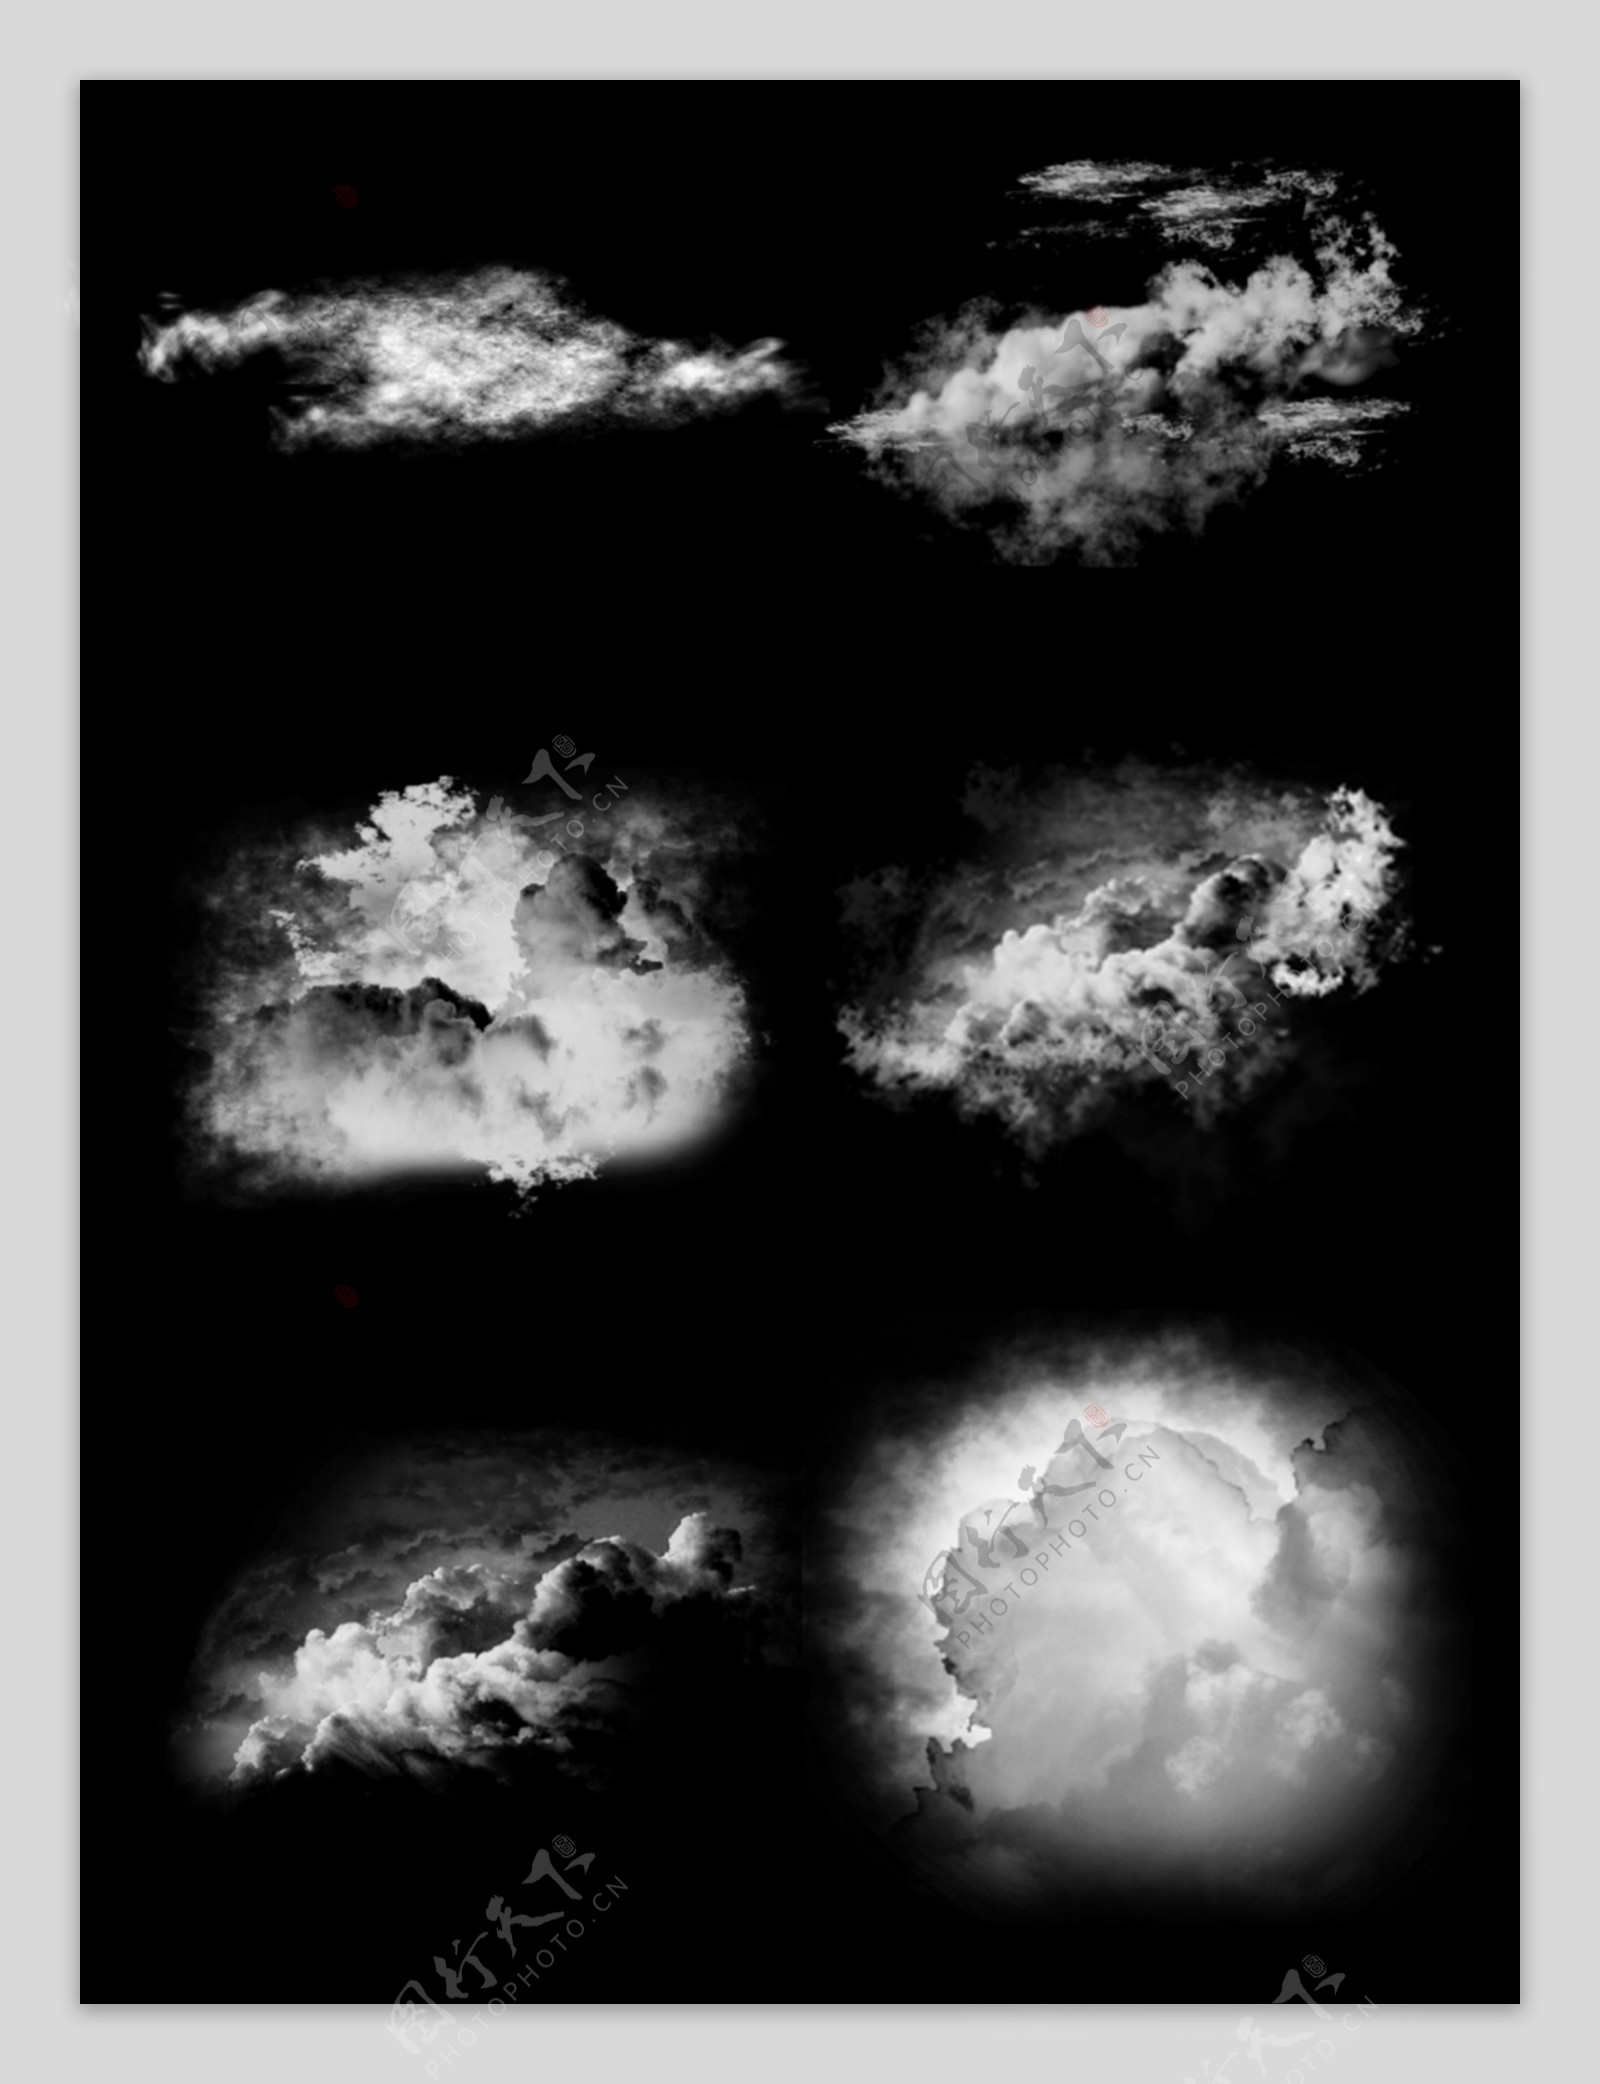 白色实质感云云彩装饰图案素材背景套图